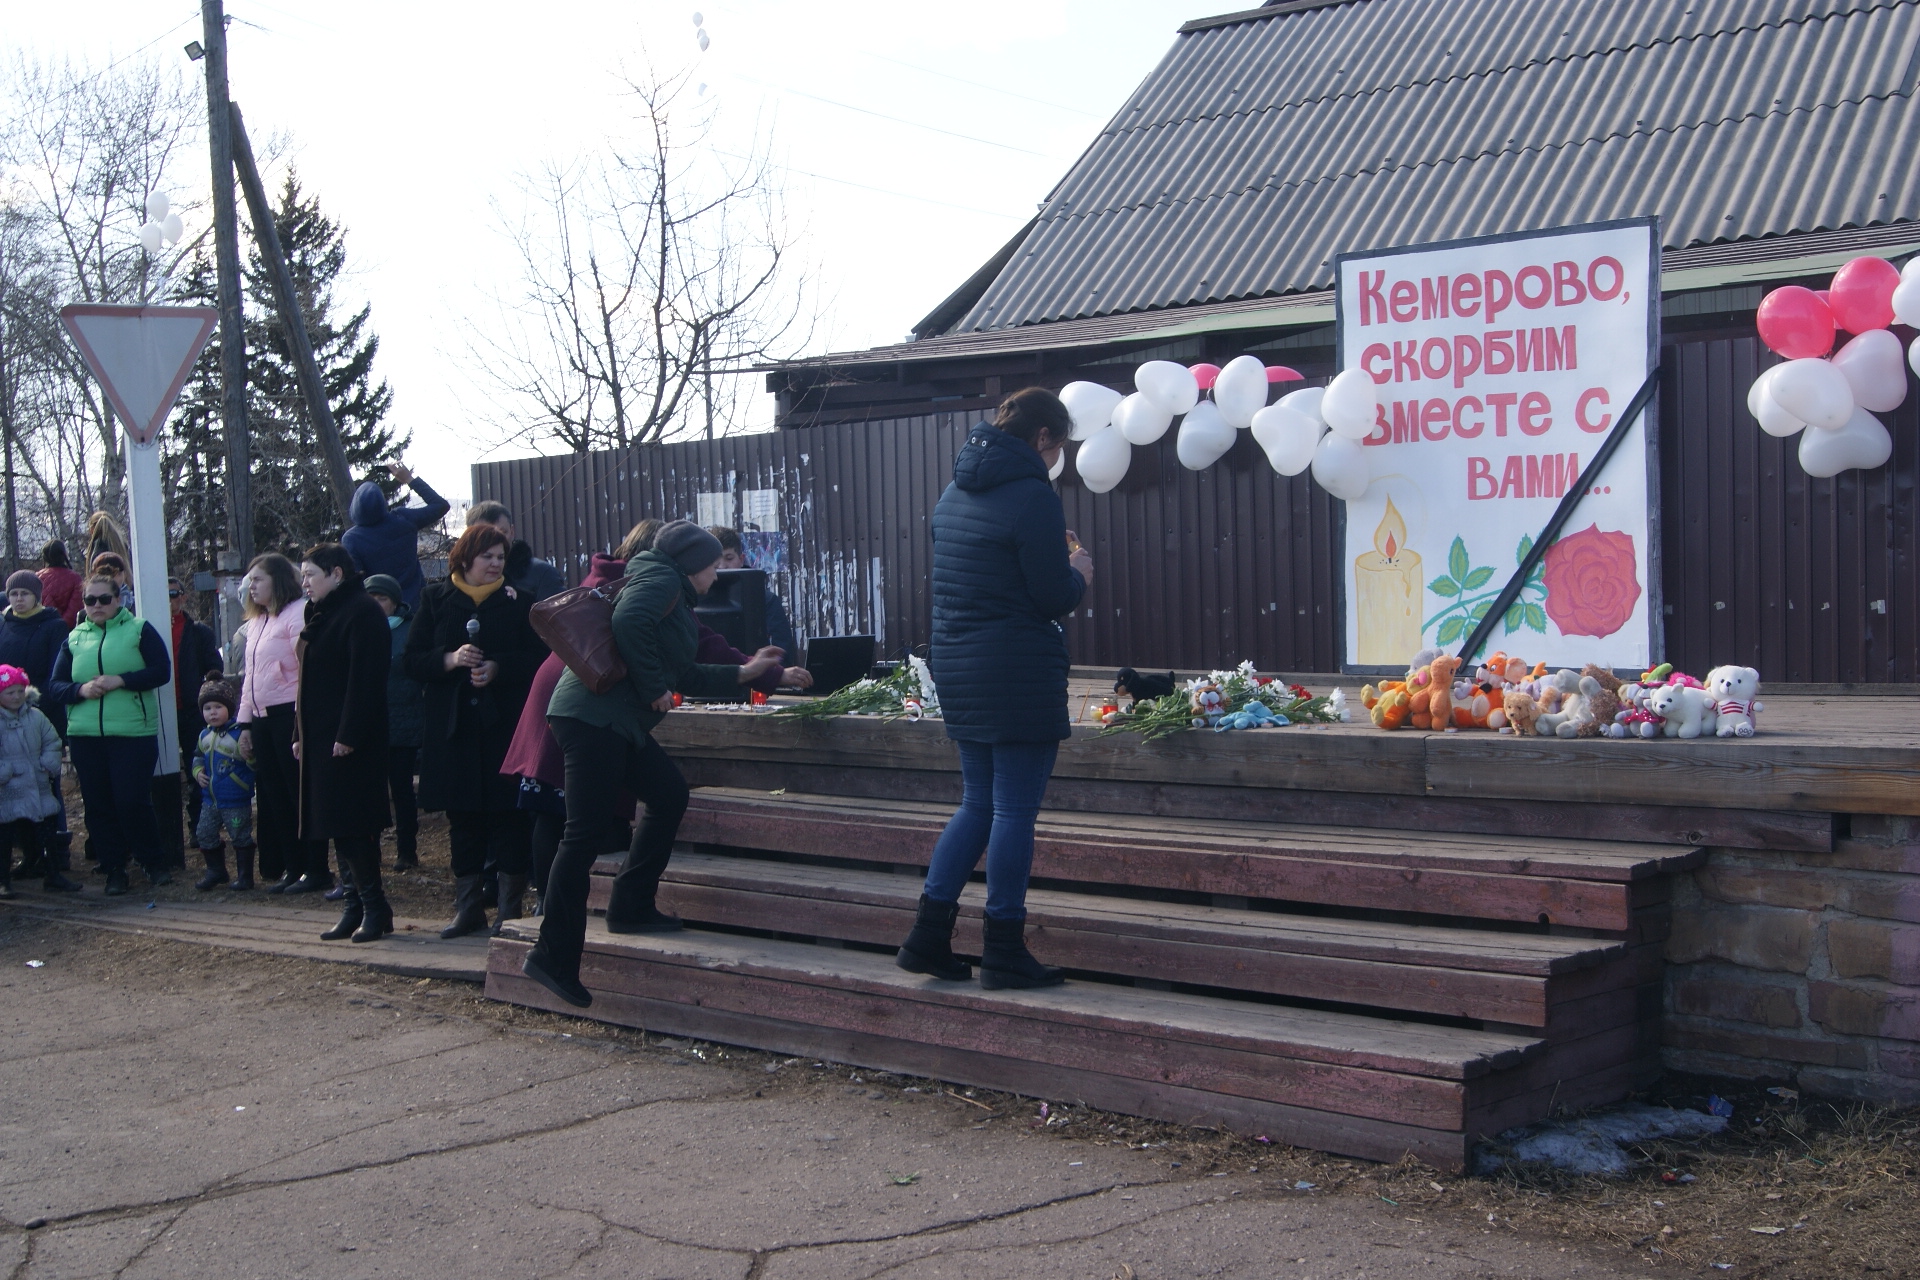  Траурный митинг в поддержку Кемерово прошел в Качугском районе